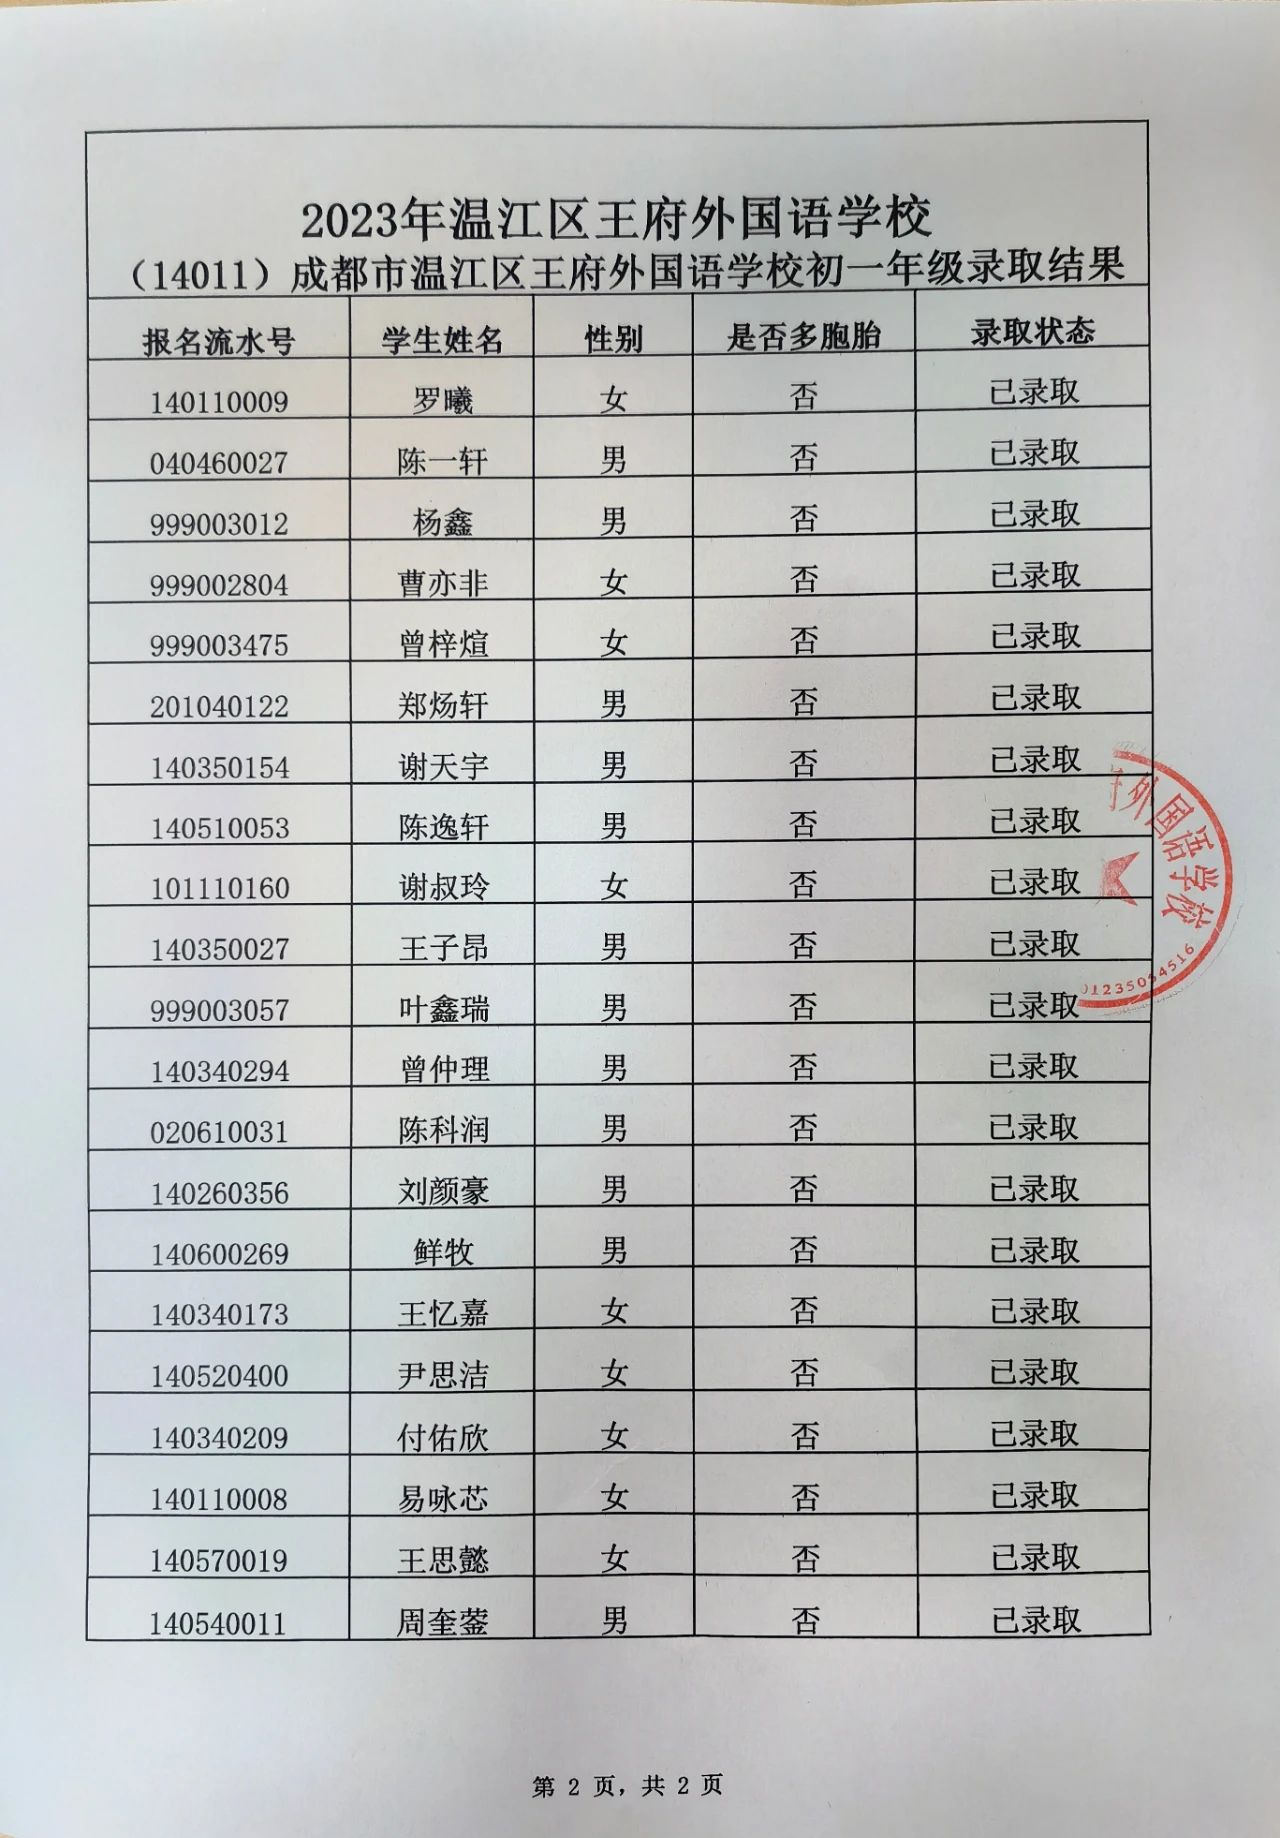 榜上有名 | 成都王府外国语学校2023小升初录取名单公示